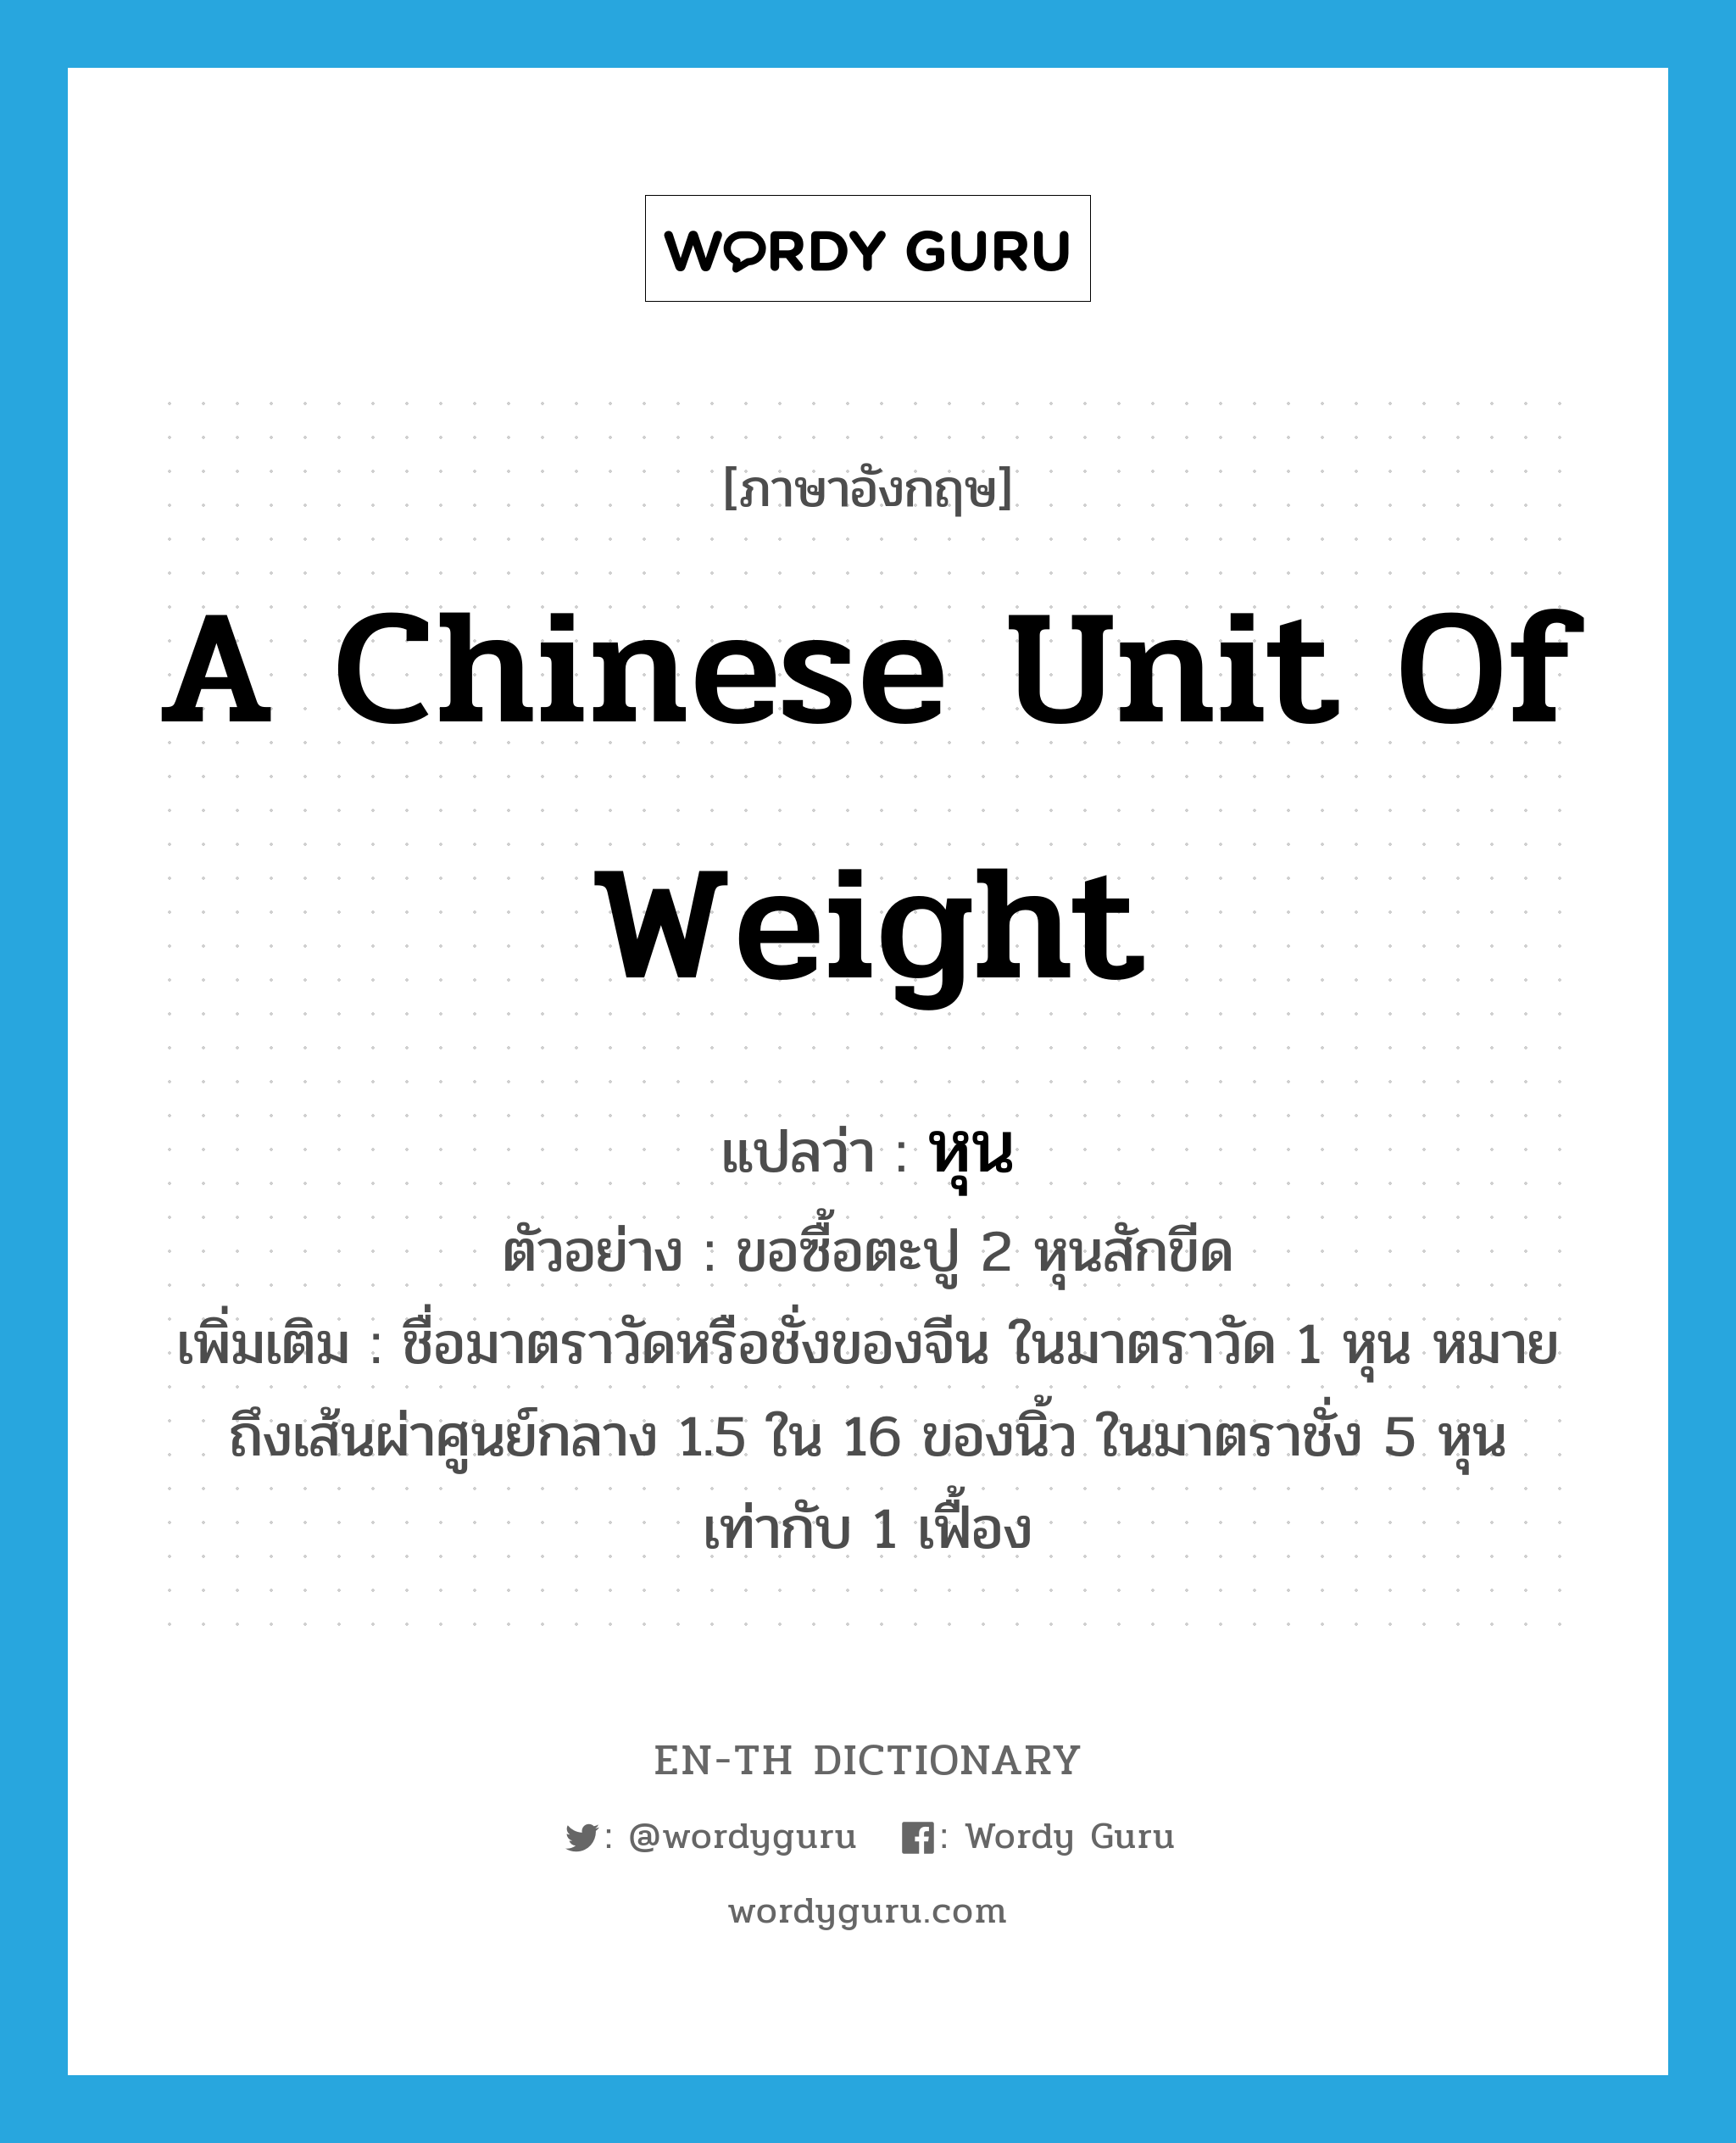 a Chinese unit of weight แปลว่า?, คำศัพท์ภาษาอังกฤษ a Chinese unit of weight แปลว่า หุน ประเภท CLAS ตัวอย่าง ขอซื้อตะปู 2 หุนสักขีด เพิ่มเติม ชื่อมาตราวัดหรือชั่งของจีน ในมาตราวัด 1 หุน หมายถึงเส้นผ่าศูนย์กลาง 1.5 ใน 16 ของนิ้ว ในมาตราชั่ง 5 หุน เท่ากับ 1 เฟื้อง หมวด CLAS